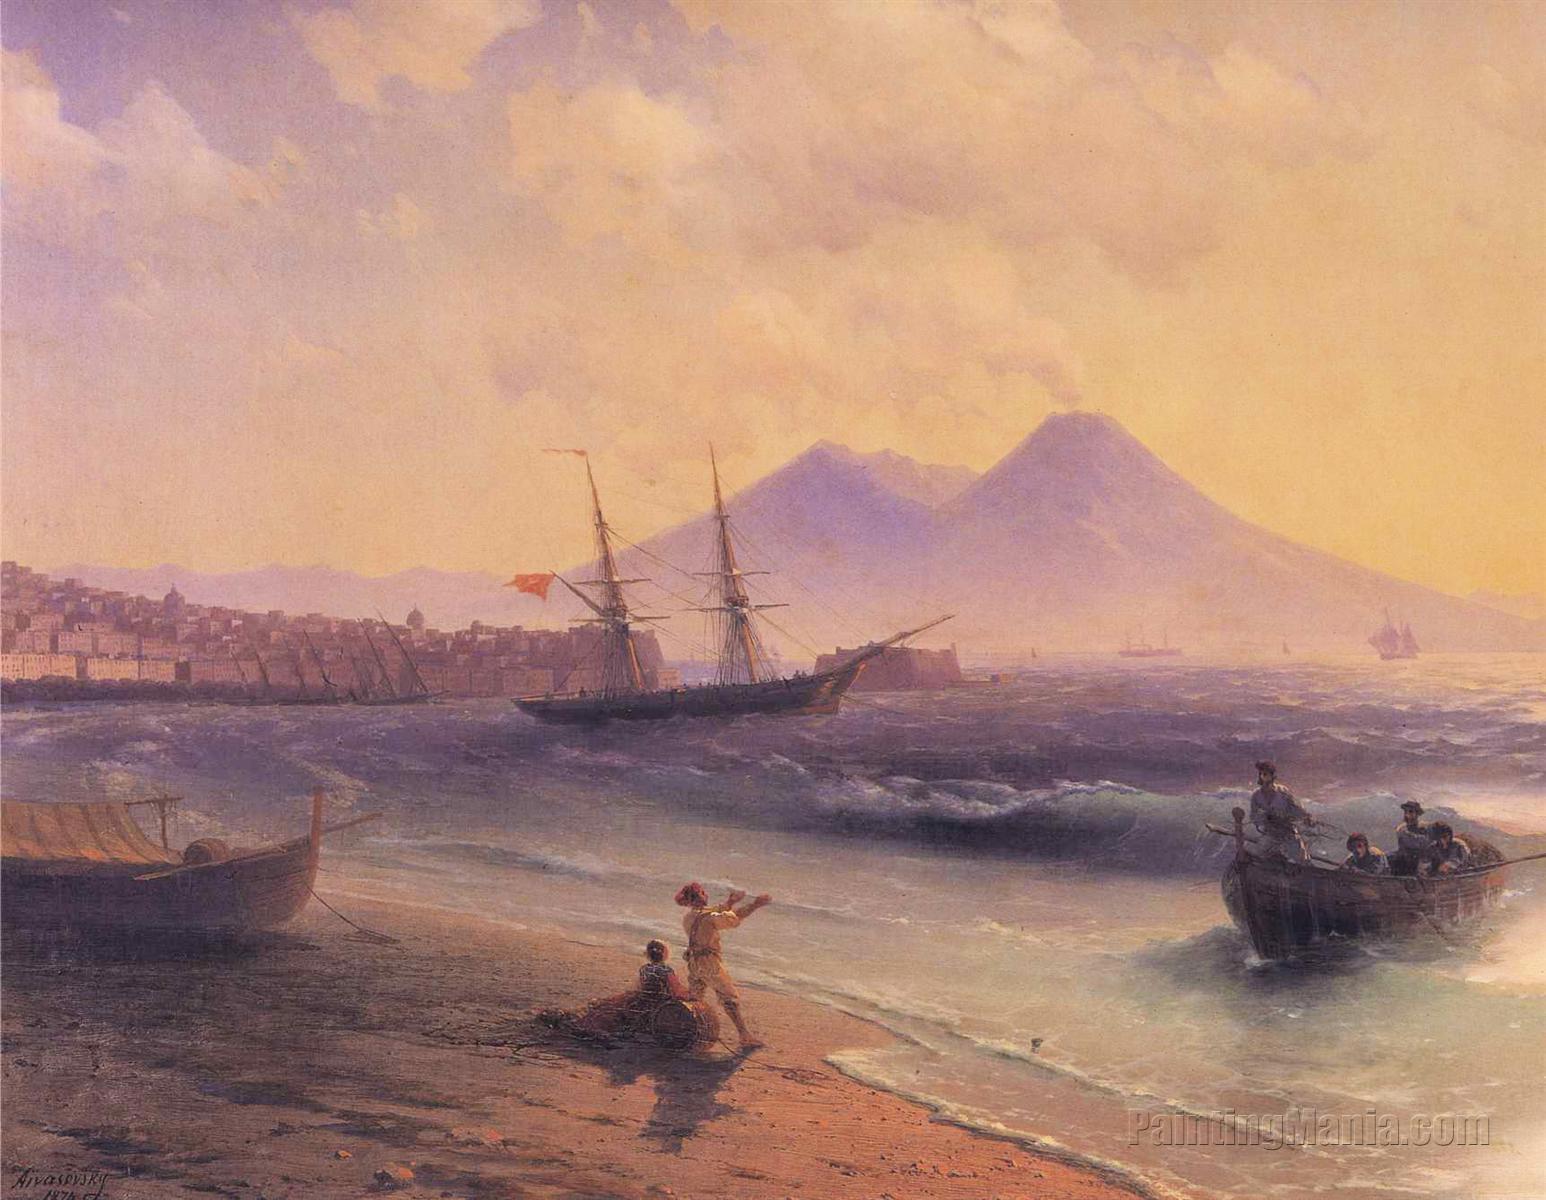 Fishermen Returning near Naples